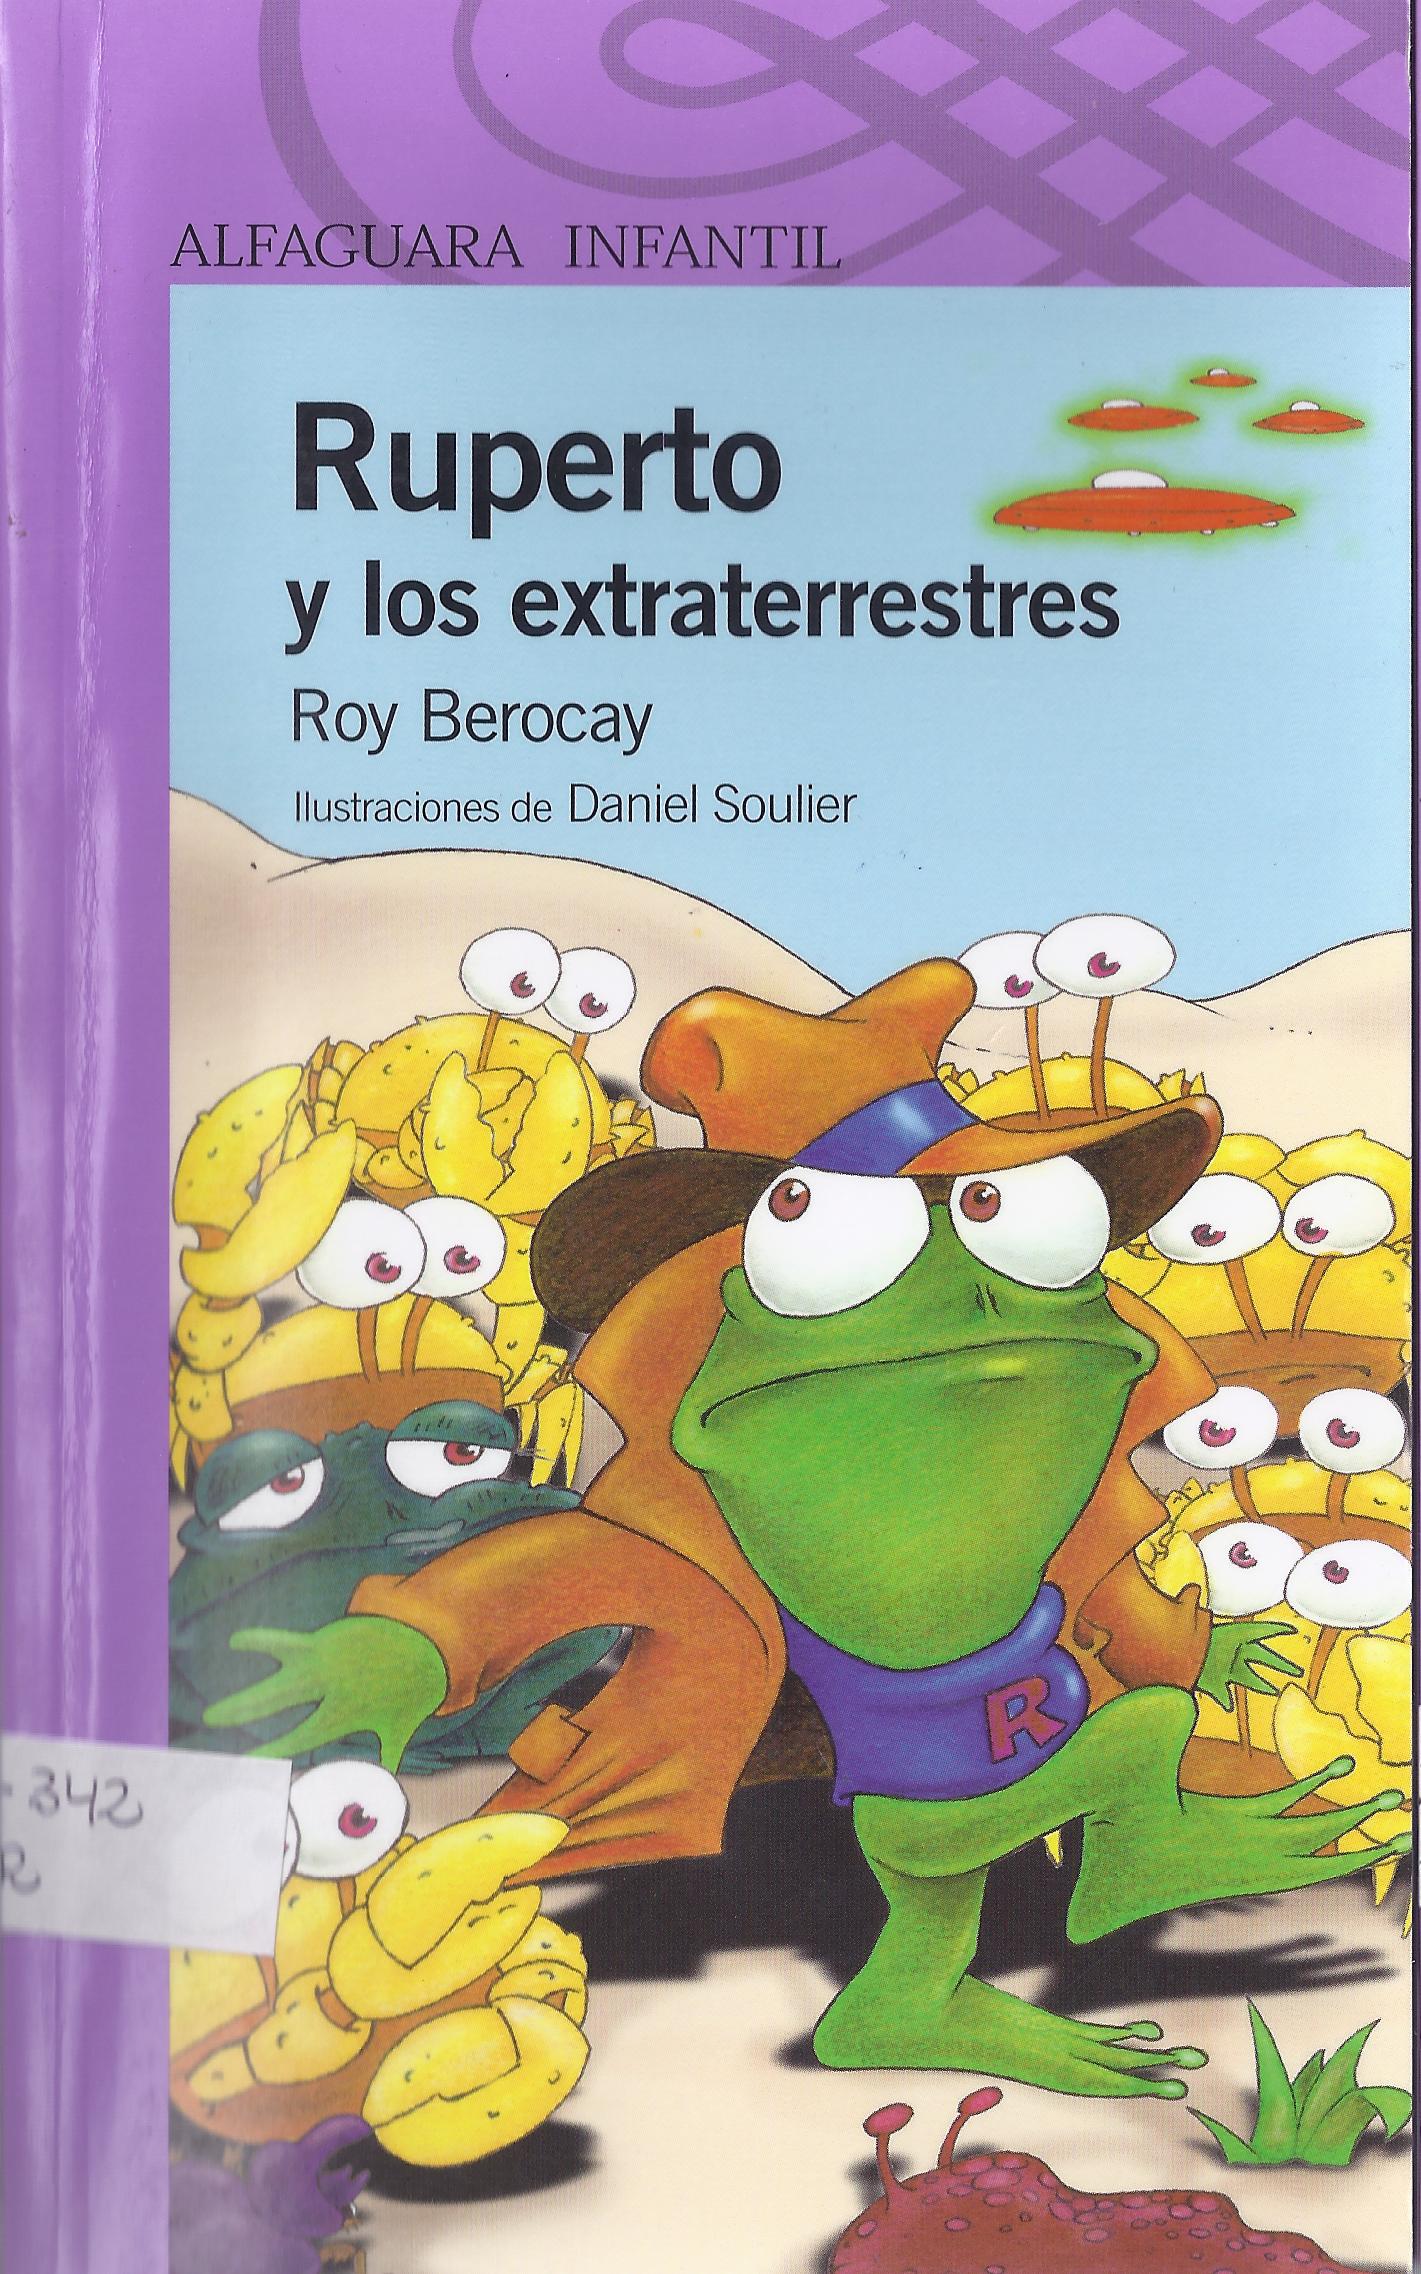 Ruperto y los extraterrestres